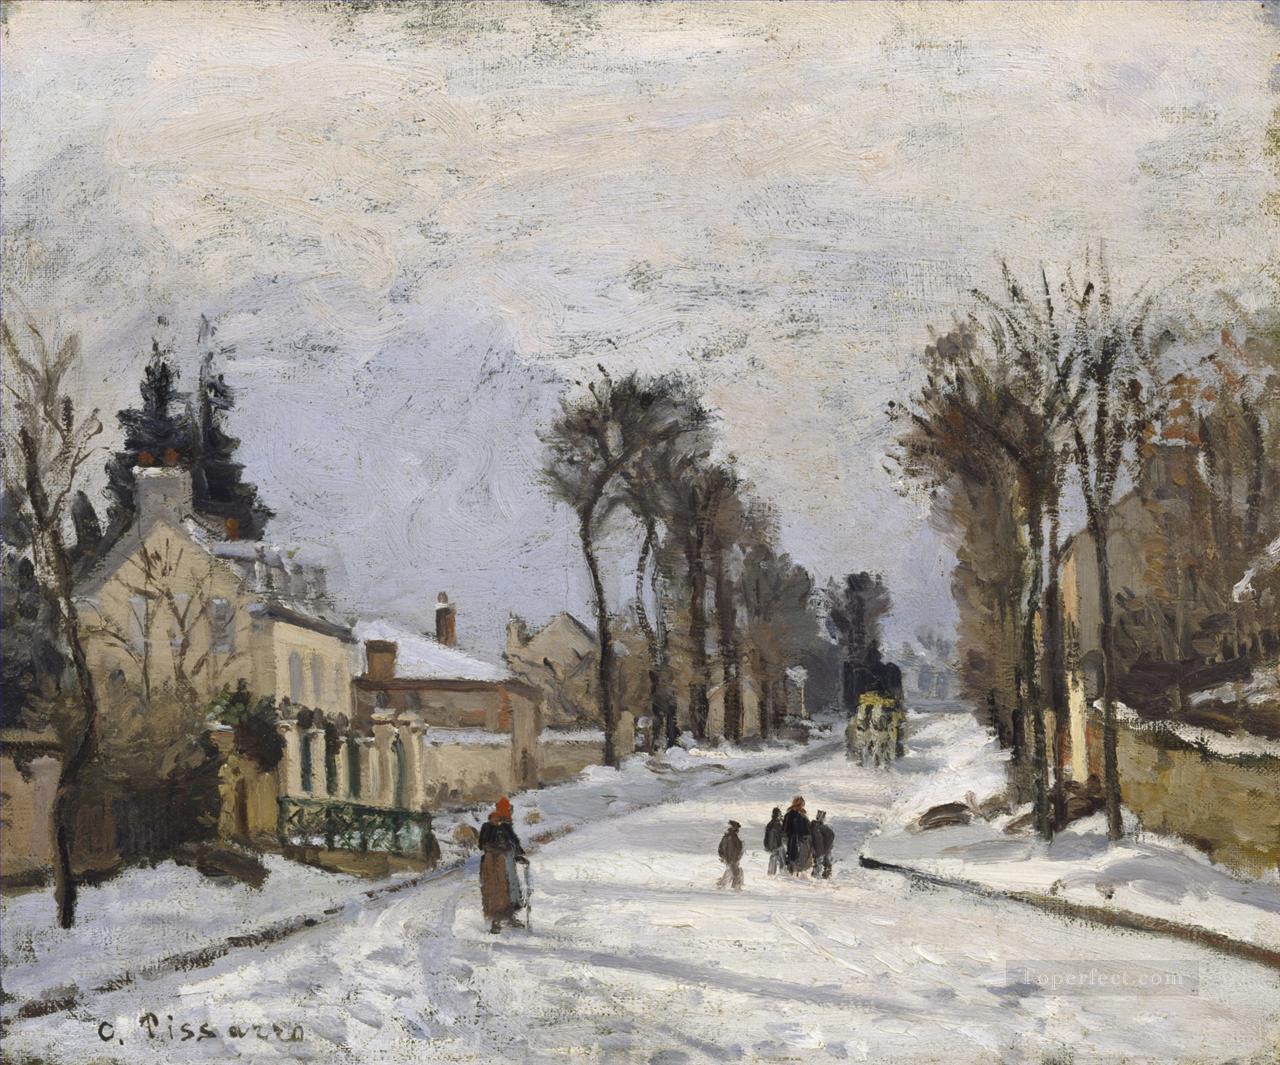 ルーブシエンヌのベルサイユへの道 1869年 カミーユ・ピサロ油絵